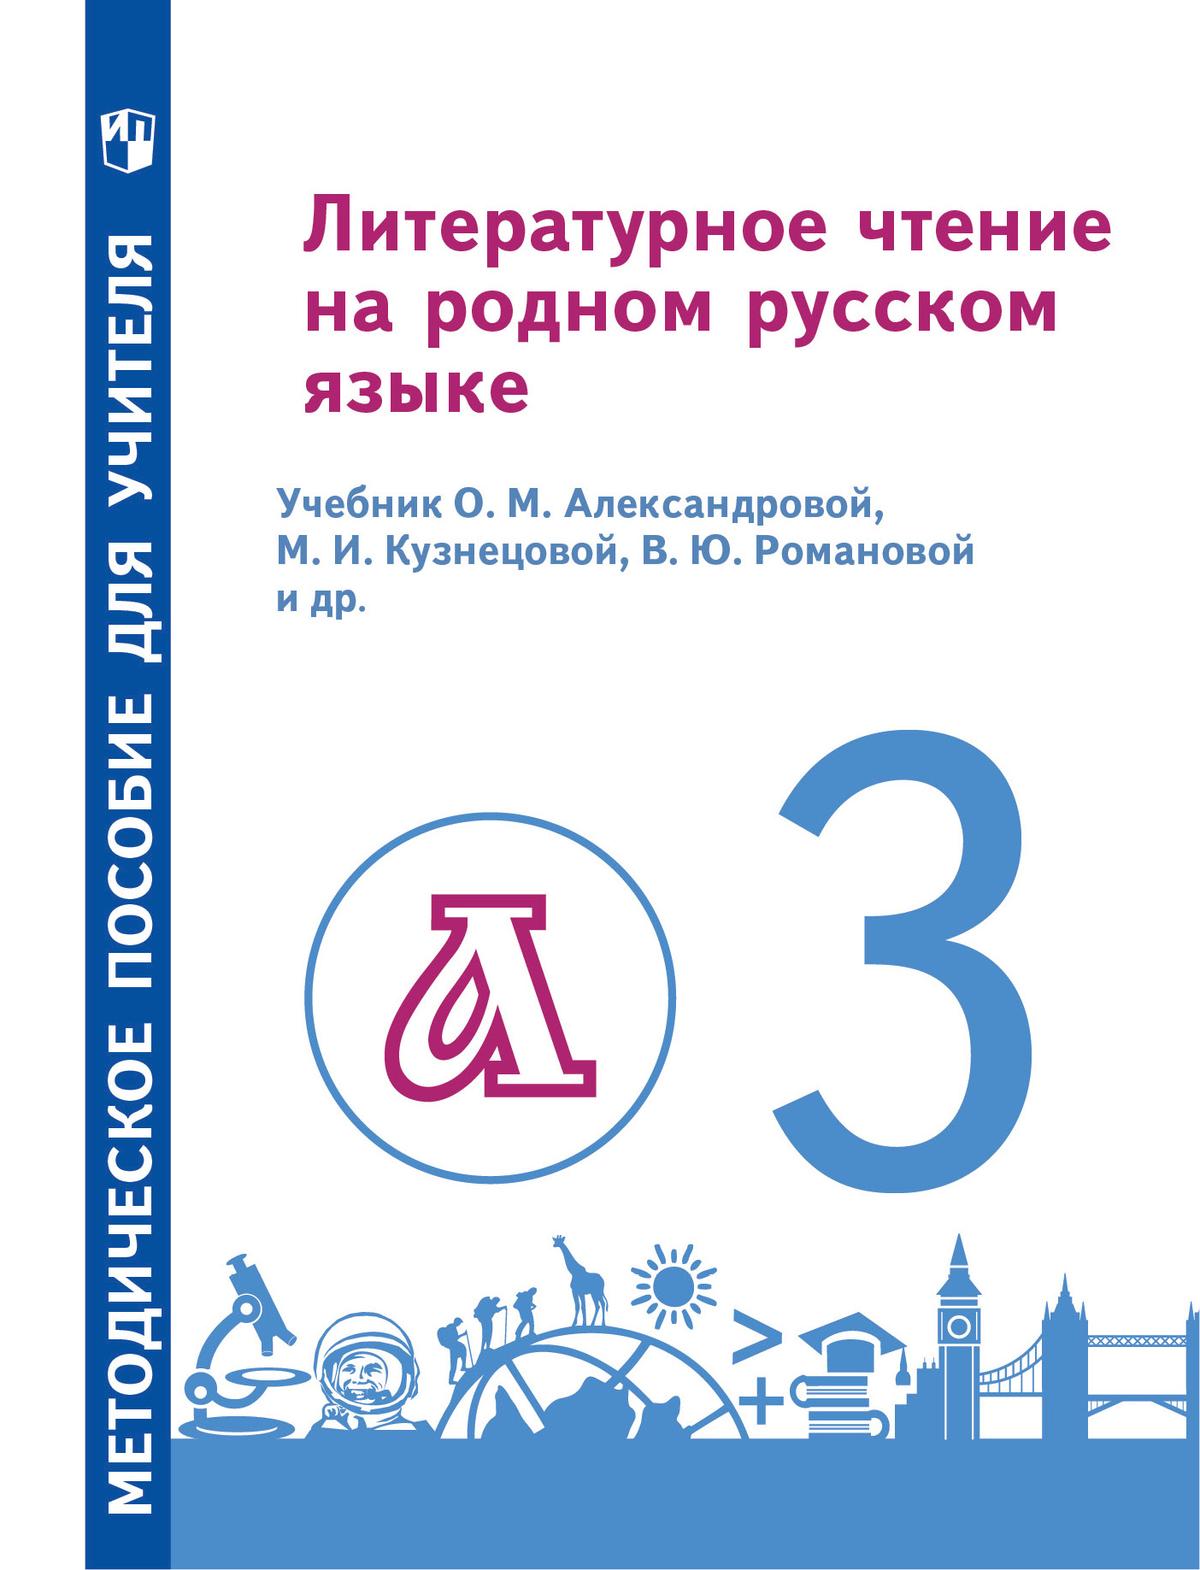 Литературное чтение на родном русском языке. 3 класс. Методическое пособие 1